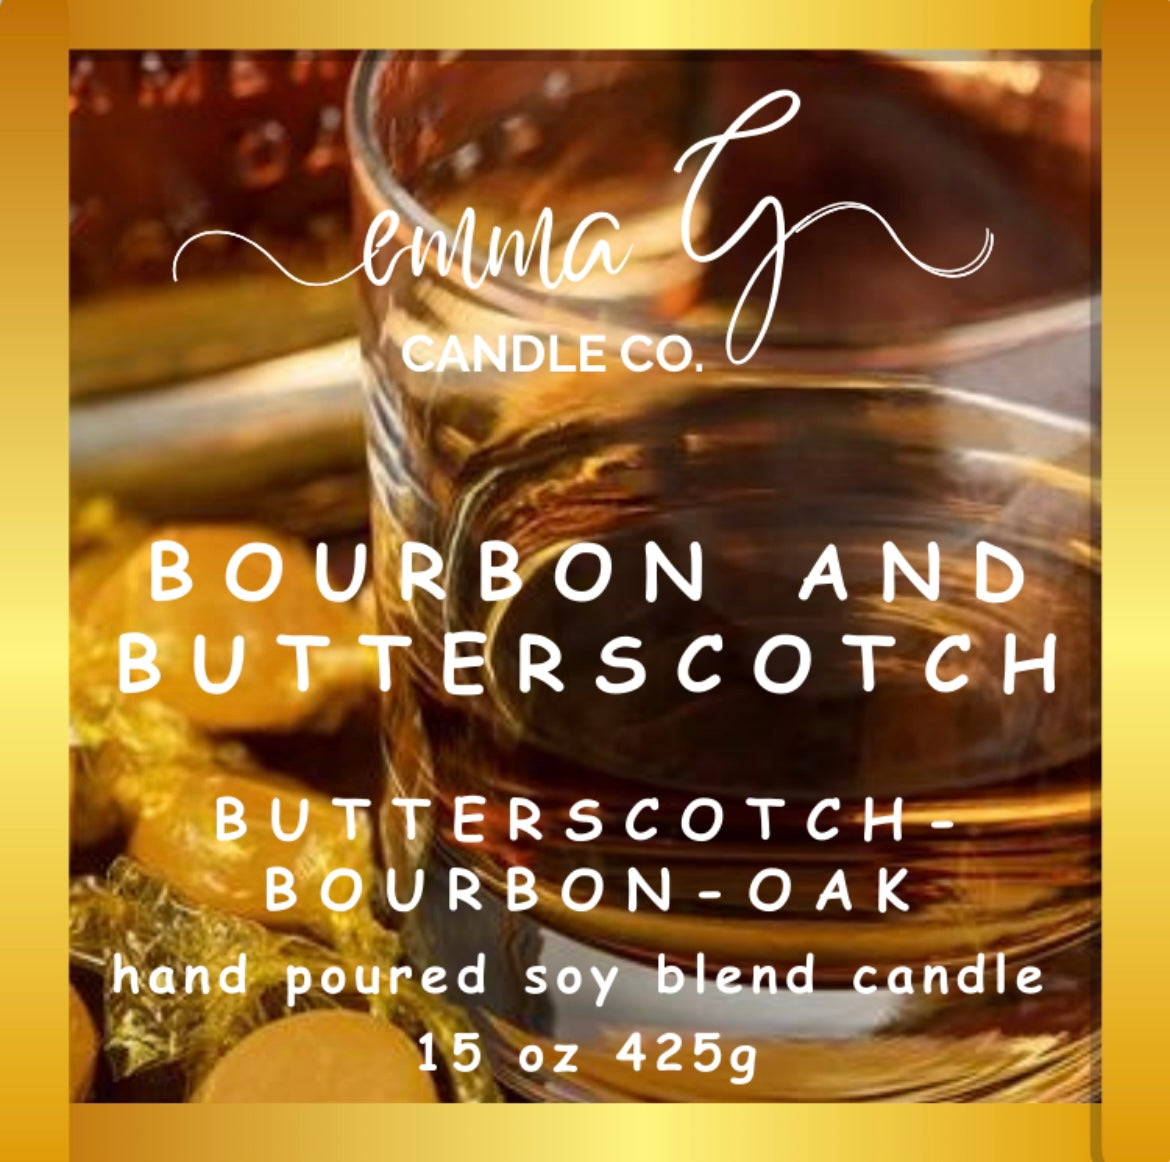 Bourbon and Butterscotch